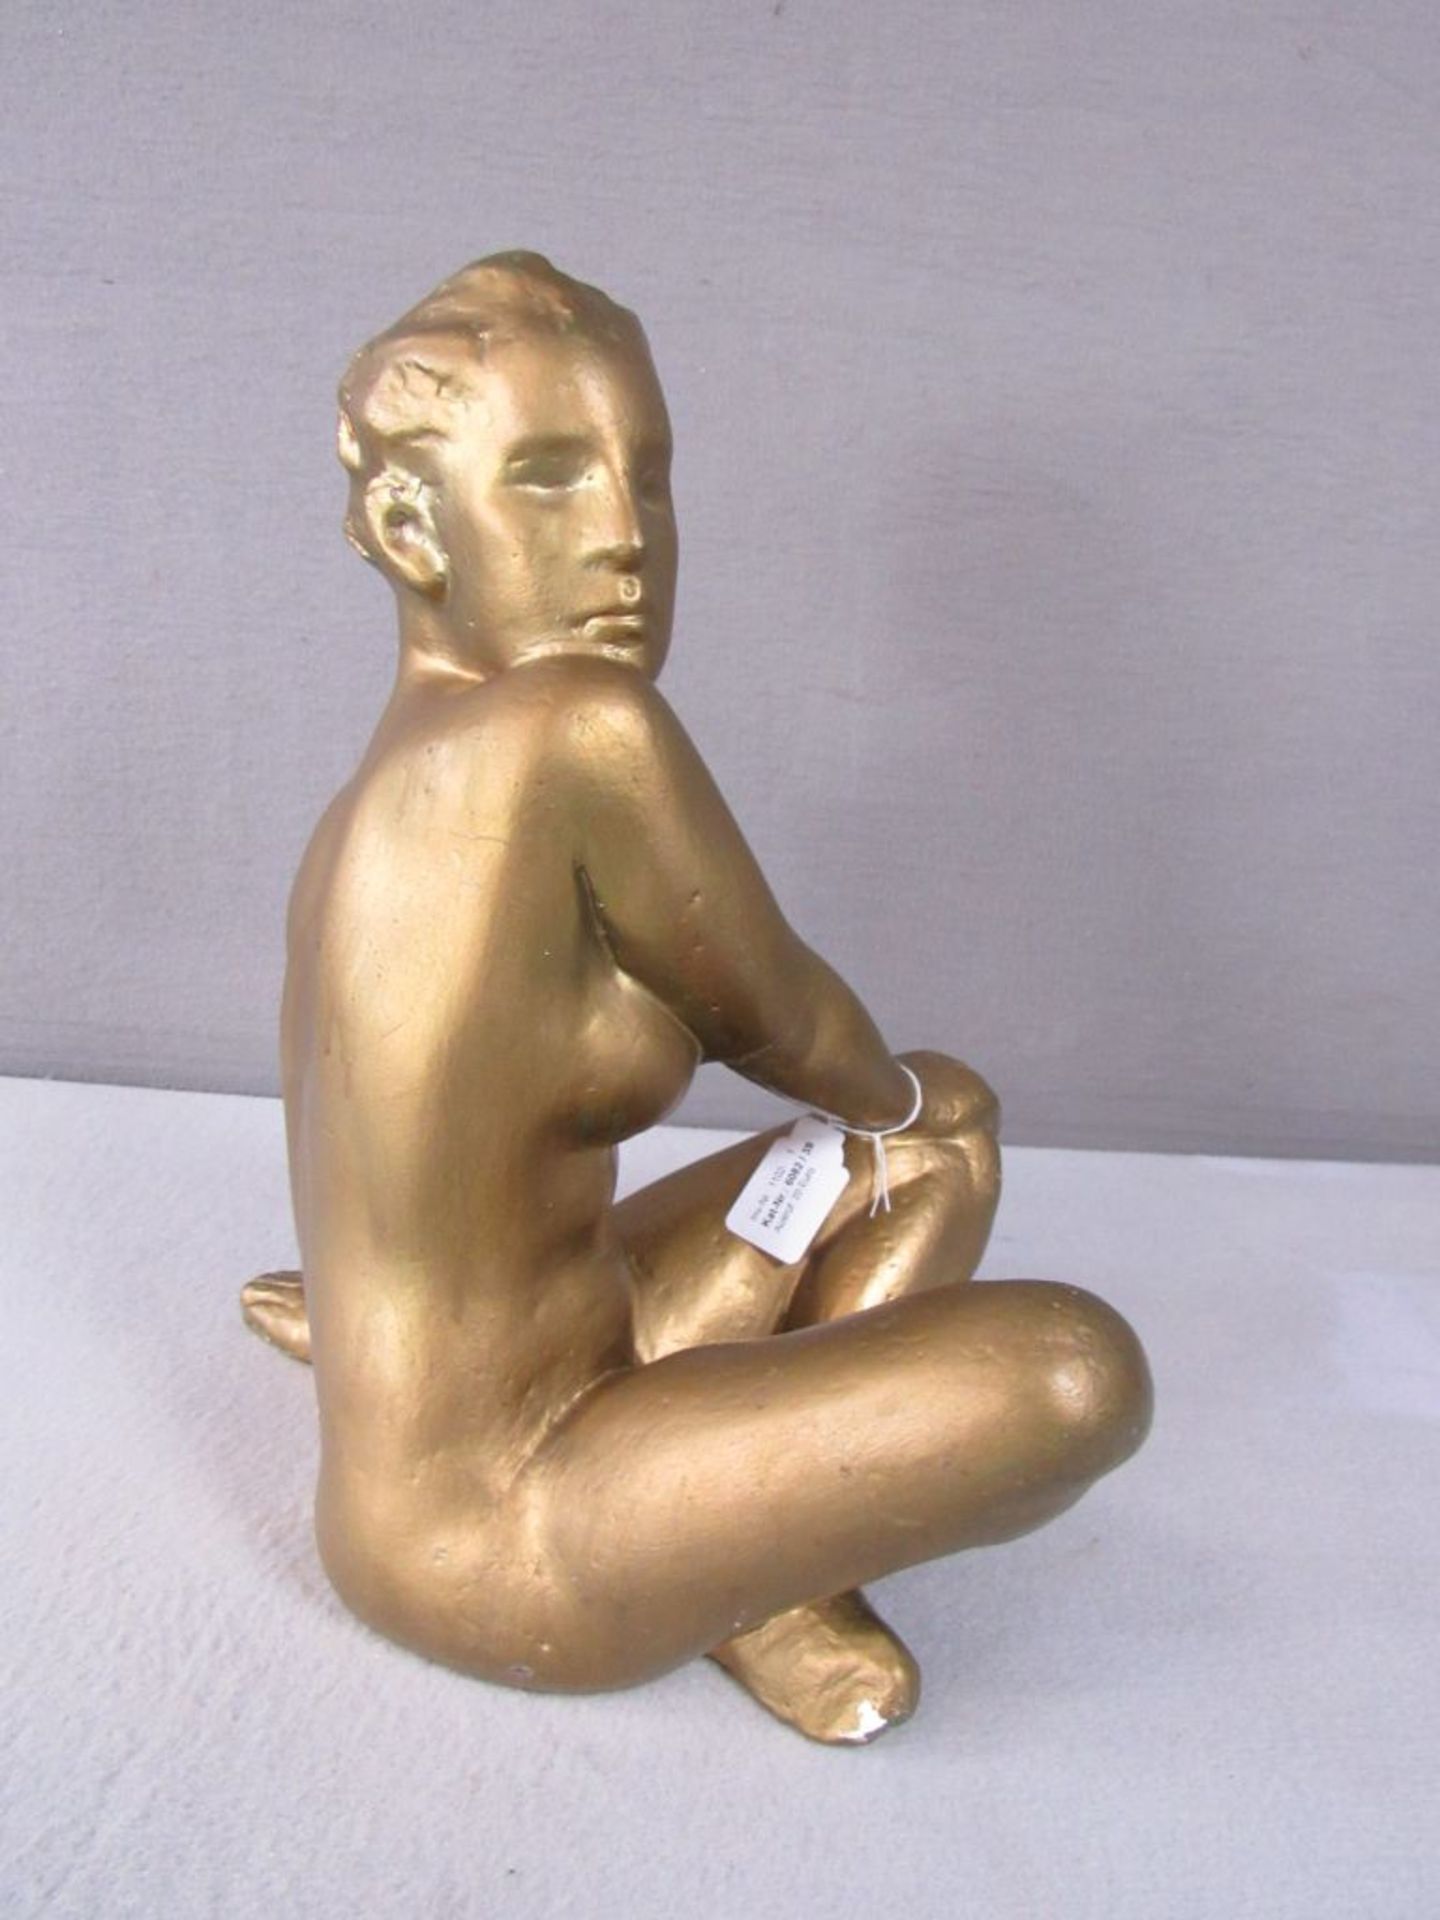 Skulptur weibliche Aktszene unterhalb gemarkt BFE Hand geklebt 40cm hoch - Image 2 of 4